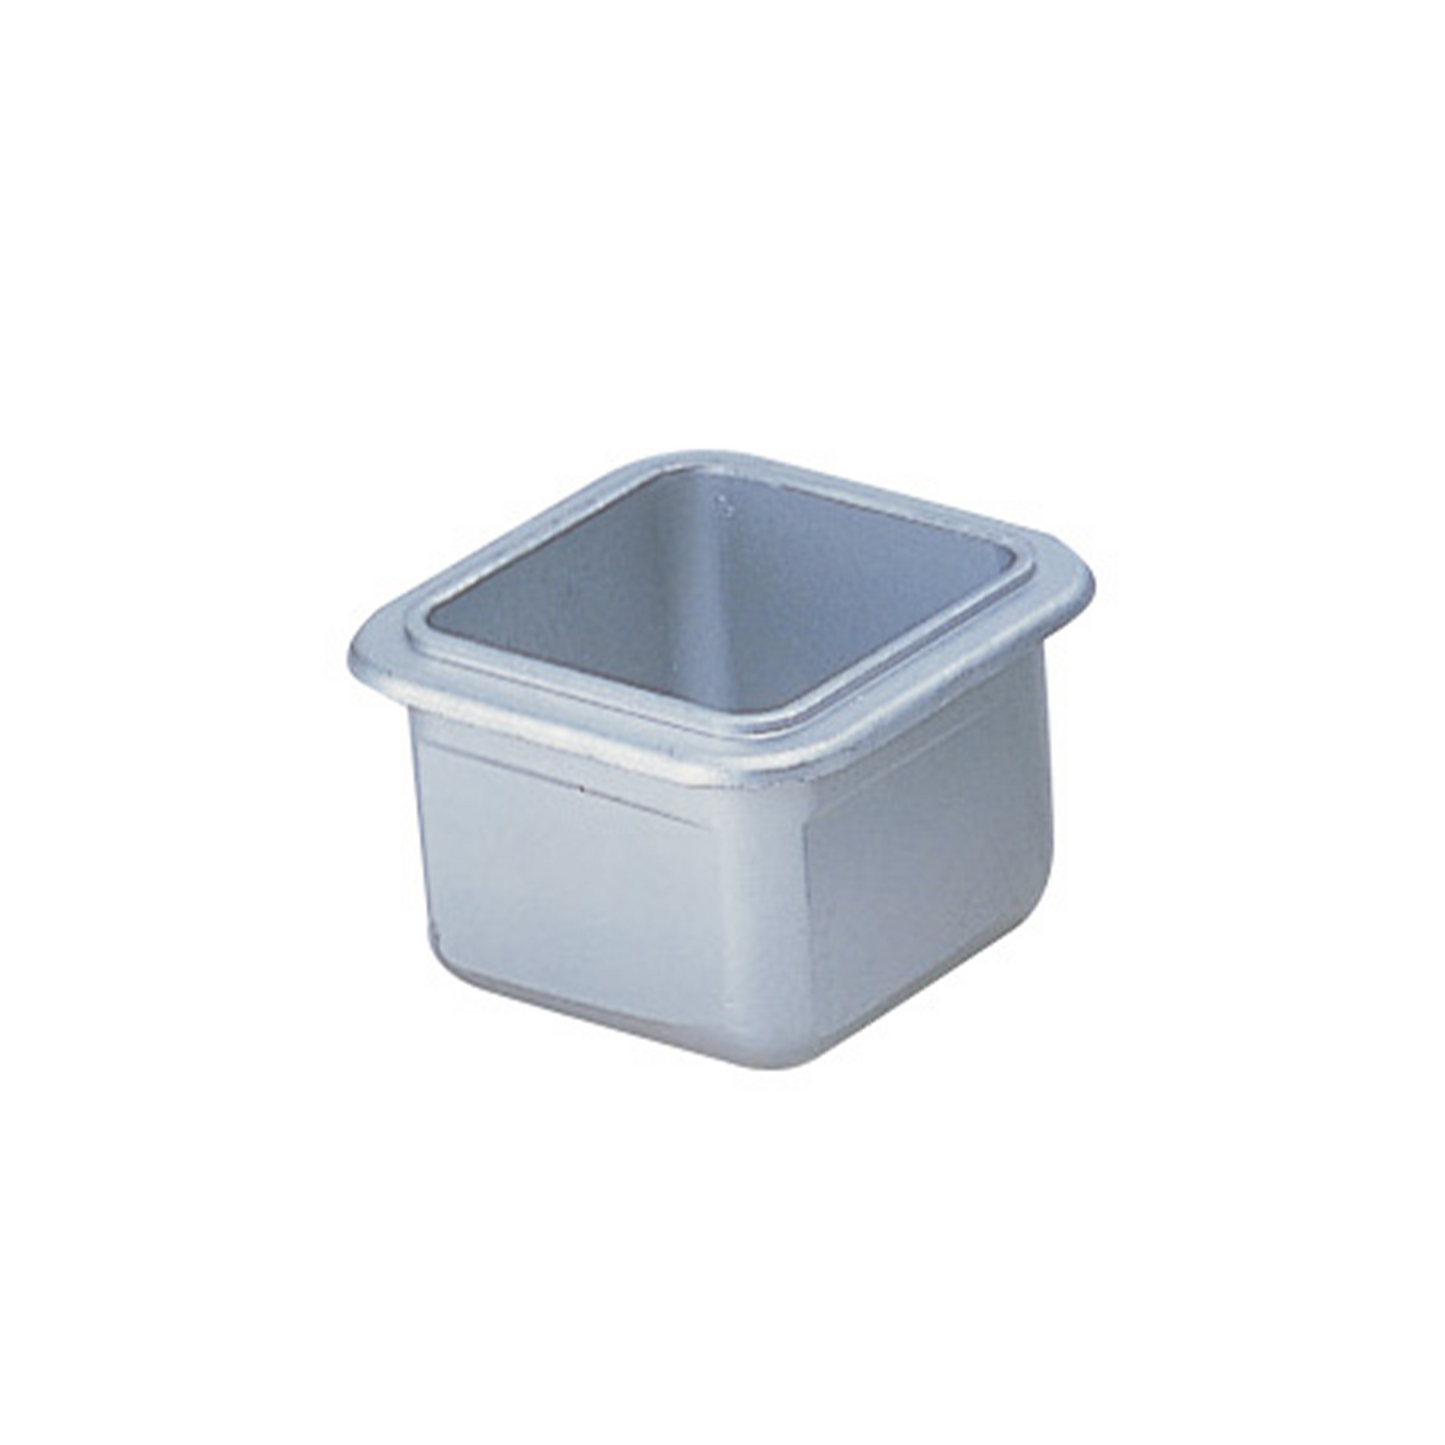 Hakko_ A1517 / A1518 / A1539/ A1540 Solder Pot_ Soldering Pot_ Hakko Products